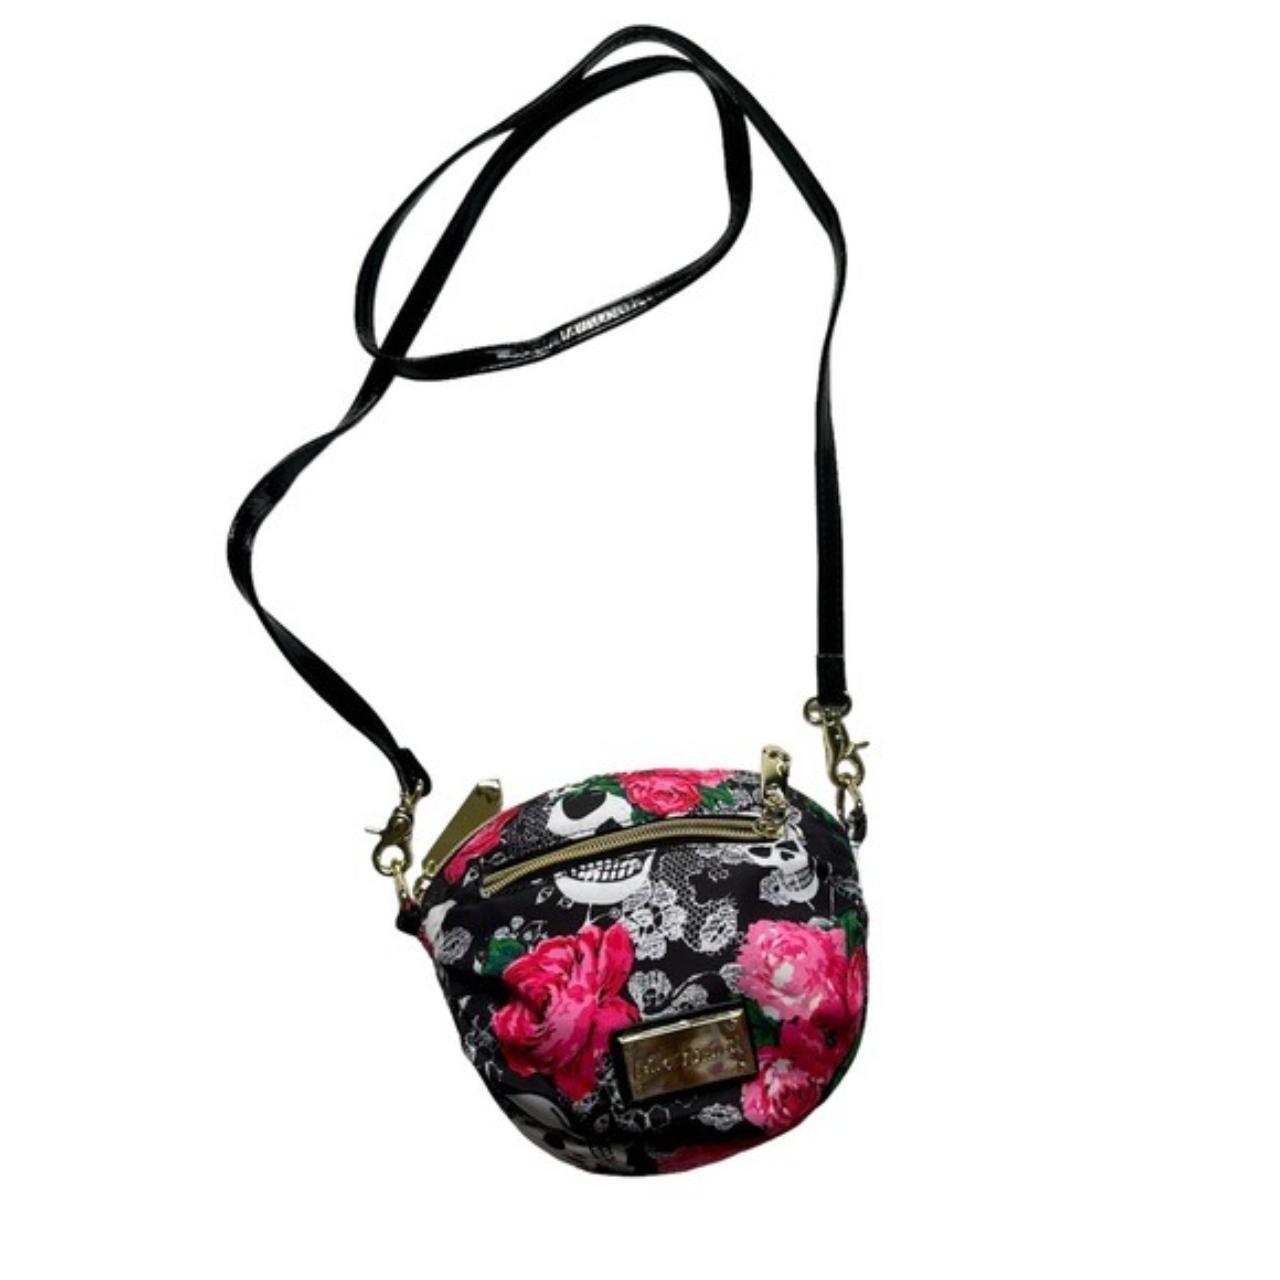 Betsey Johnson Skull purse HTF - Women's handbags